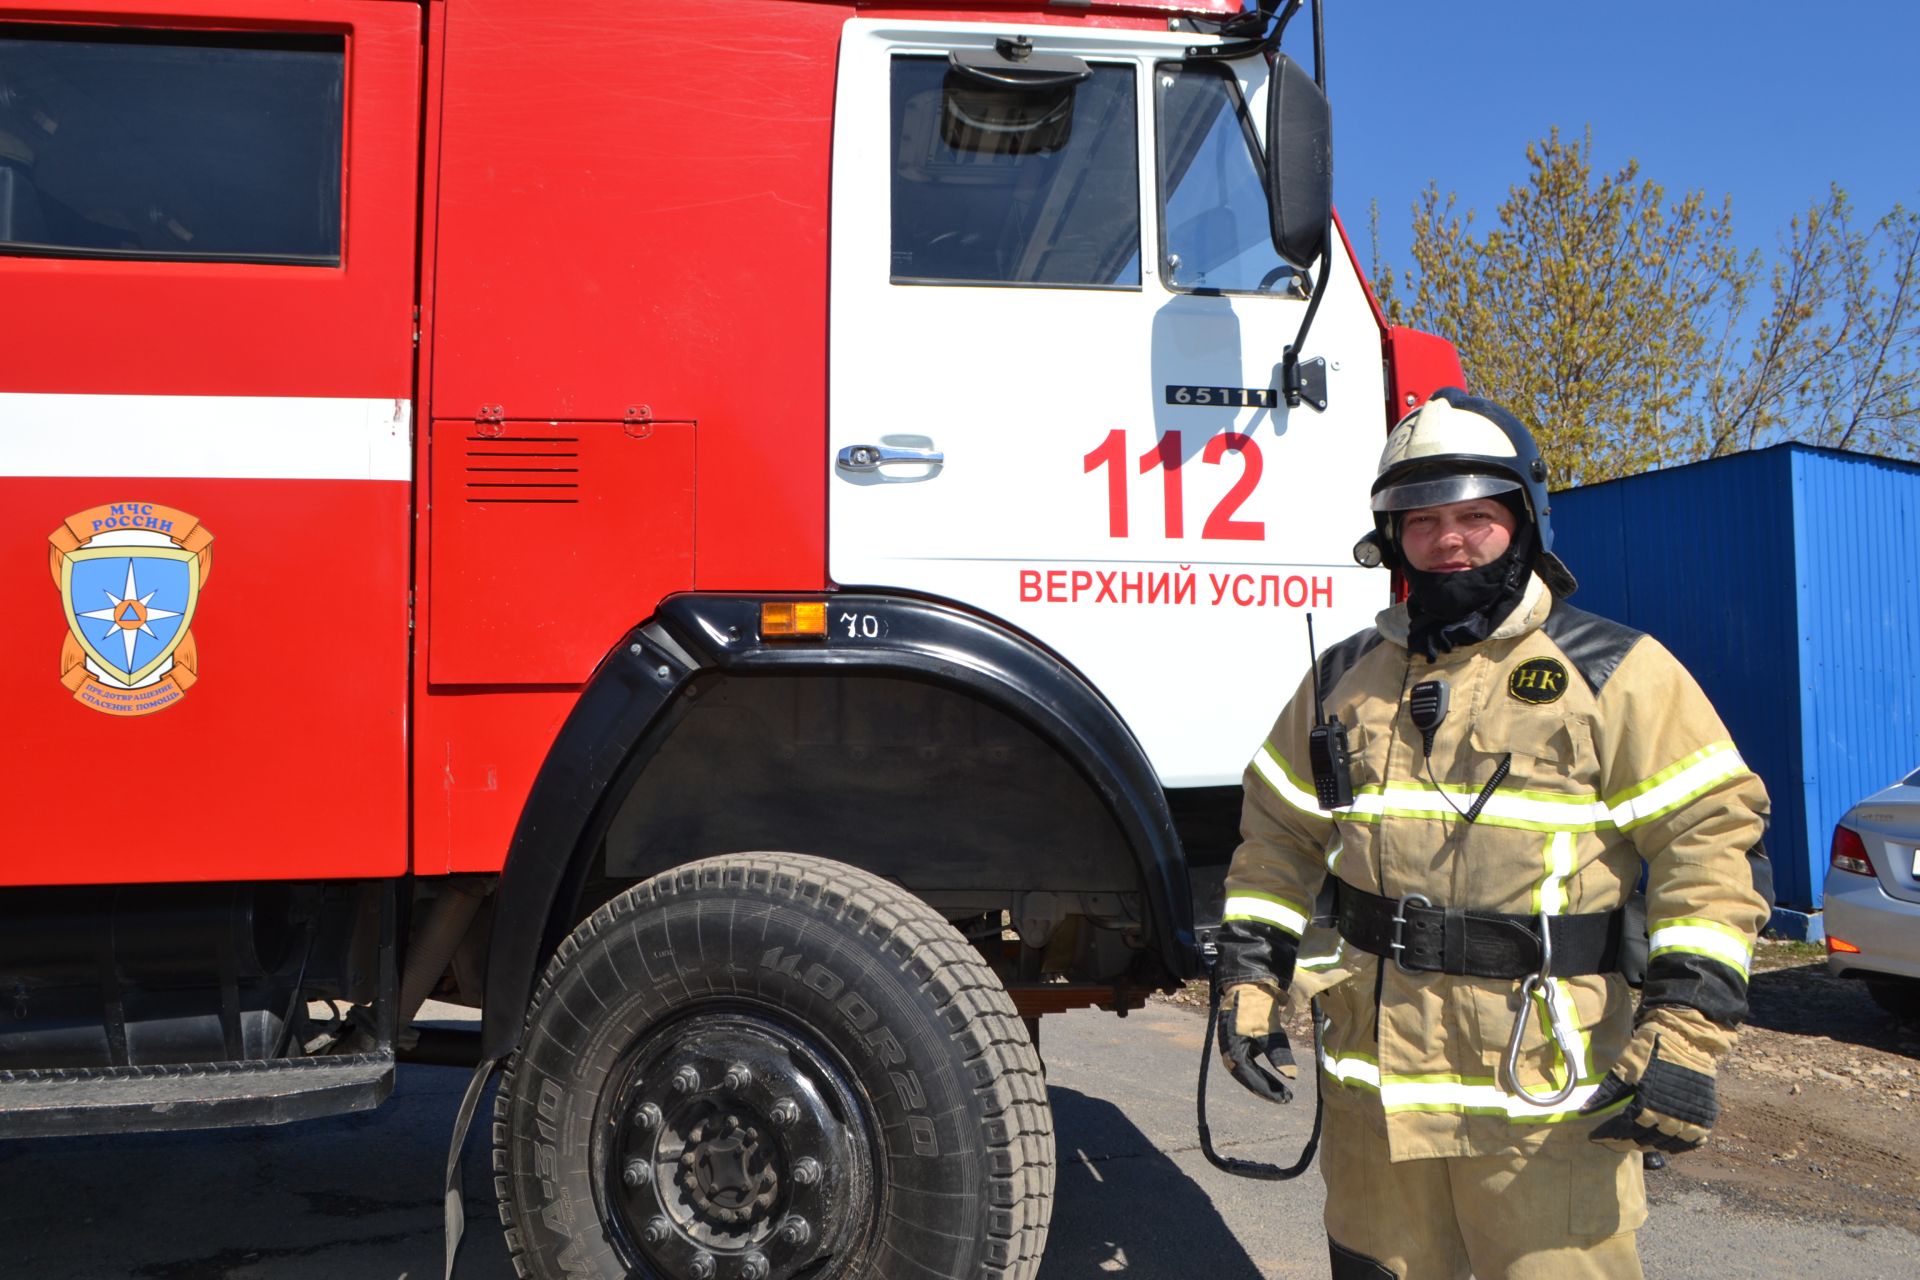 Дмитрий Хуртин: «Человек, укрощающий огонь, не может быть слабым»